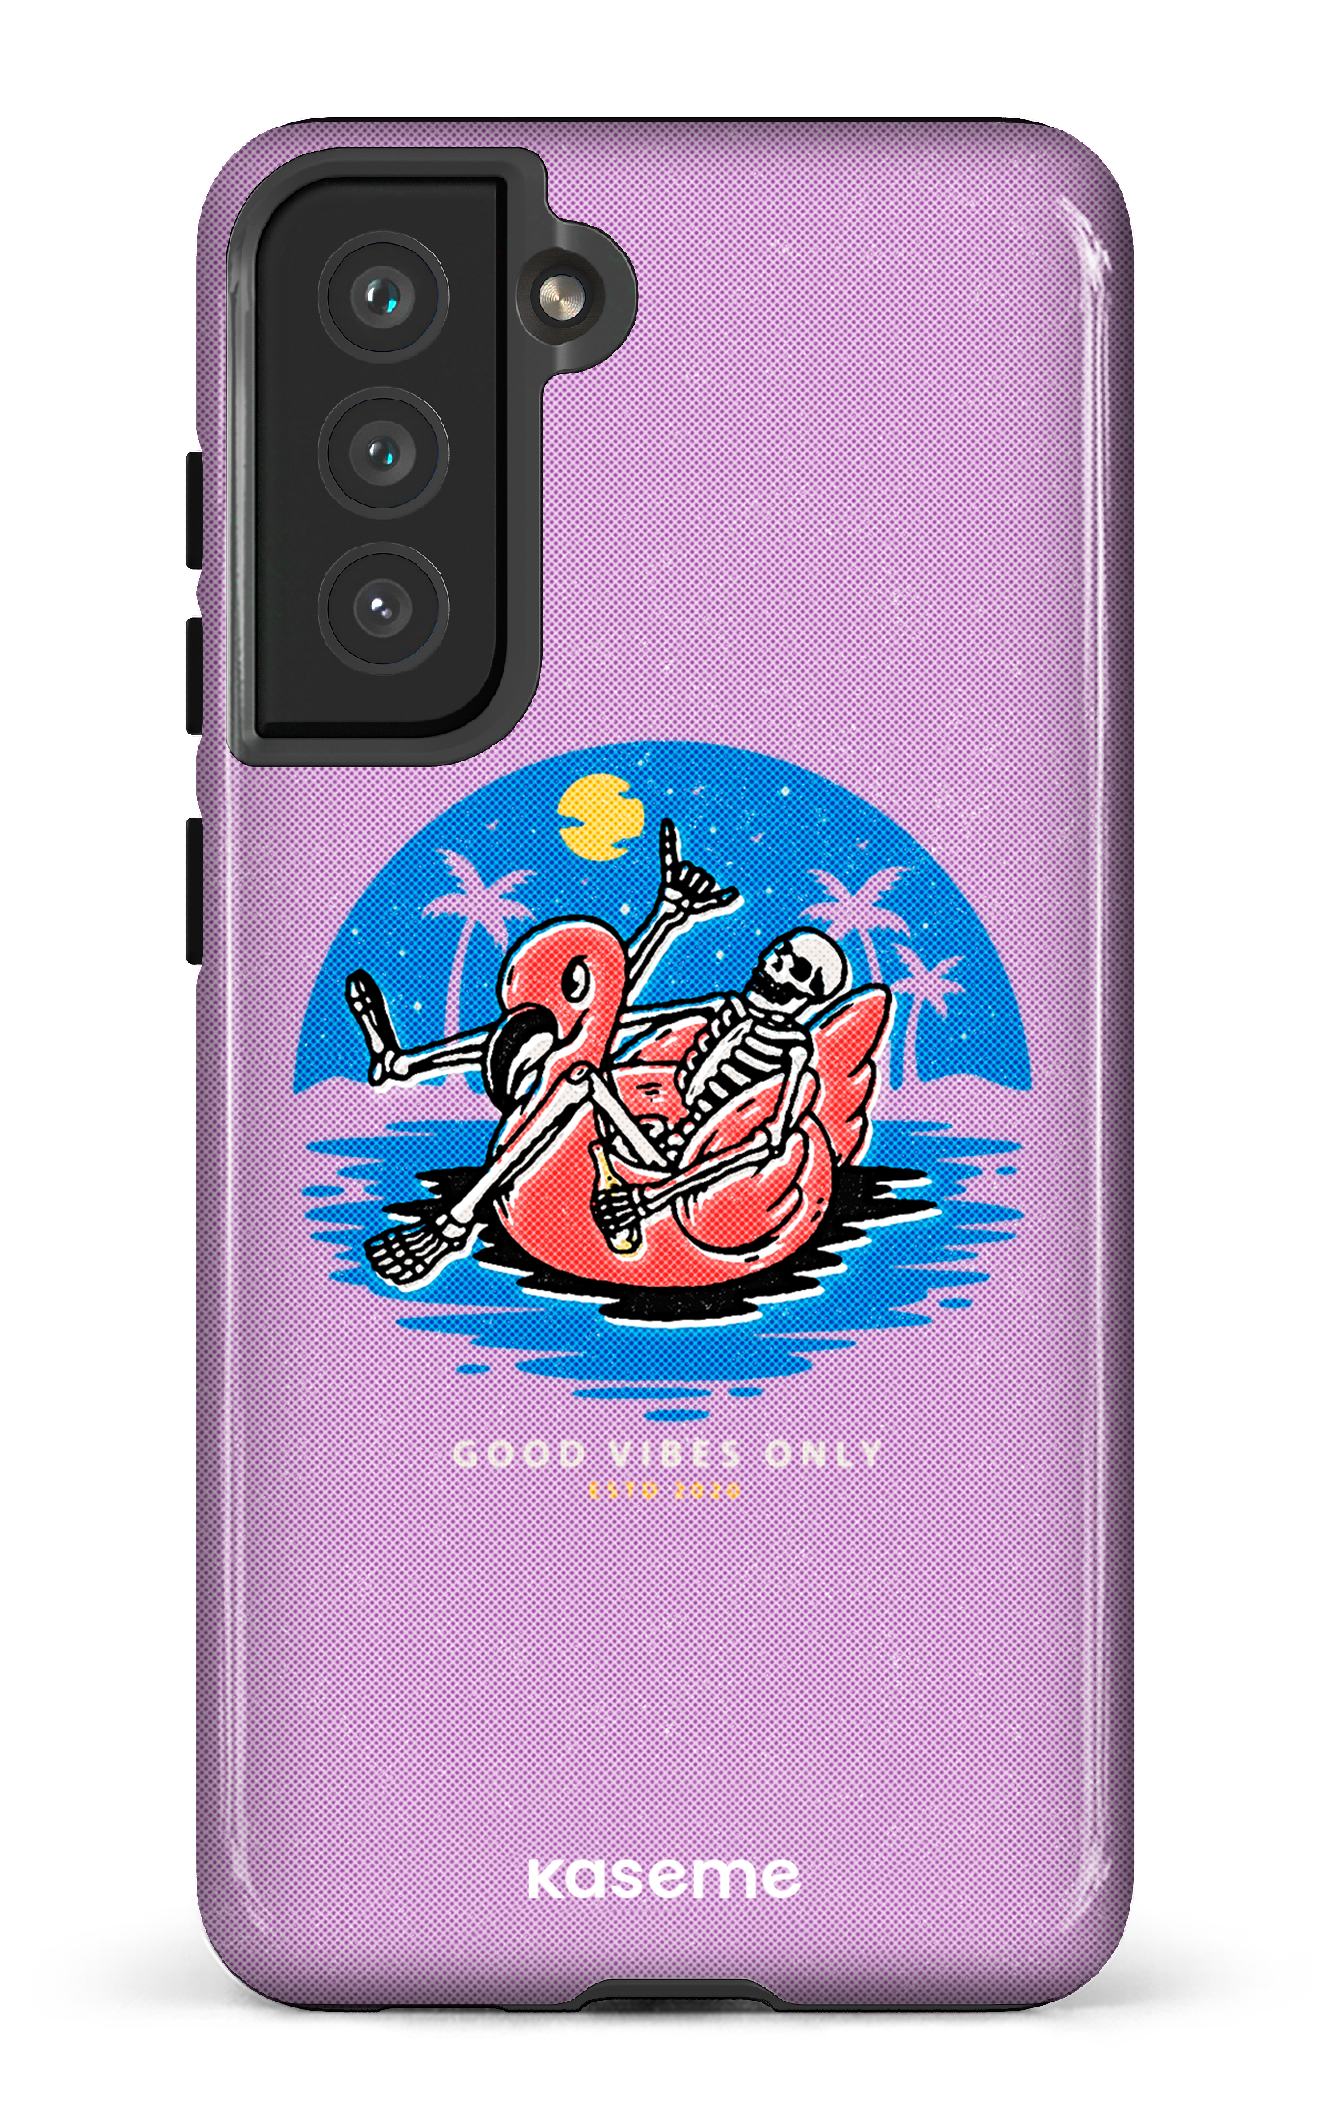 Seaside purple - Galaxy S21 FE